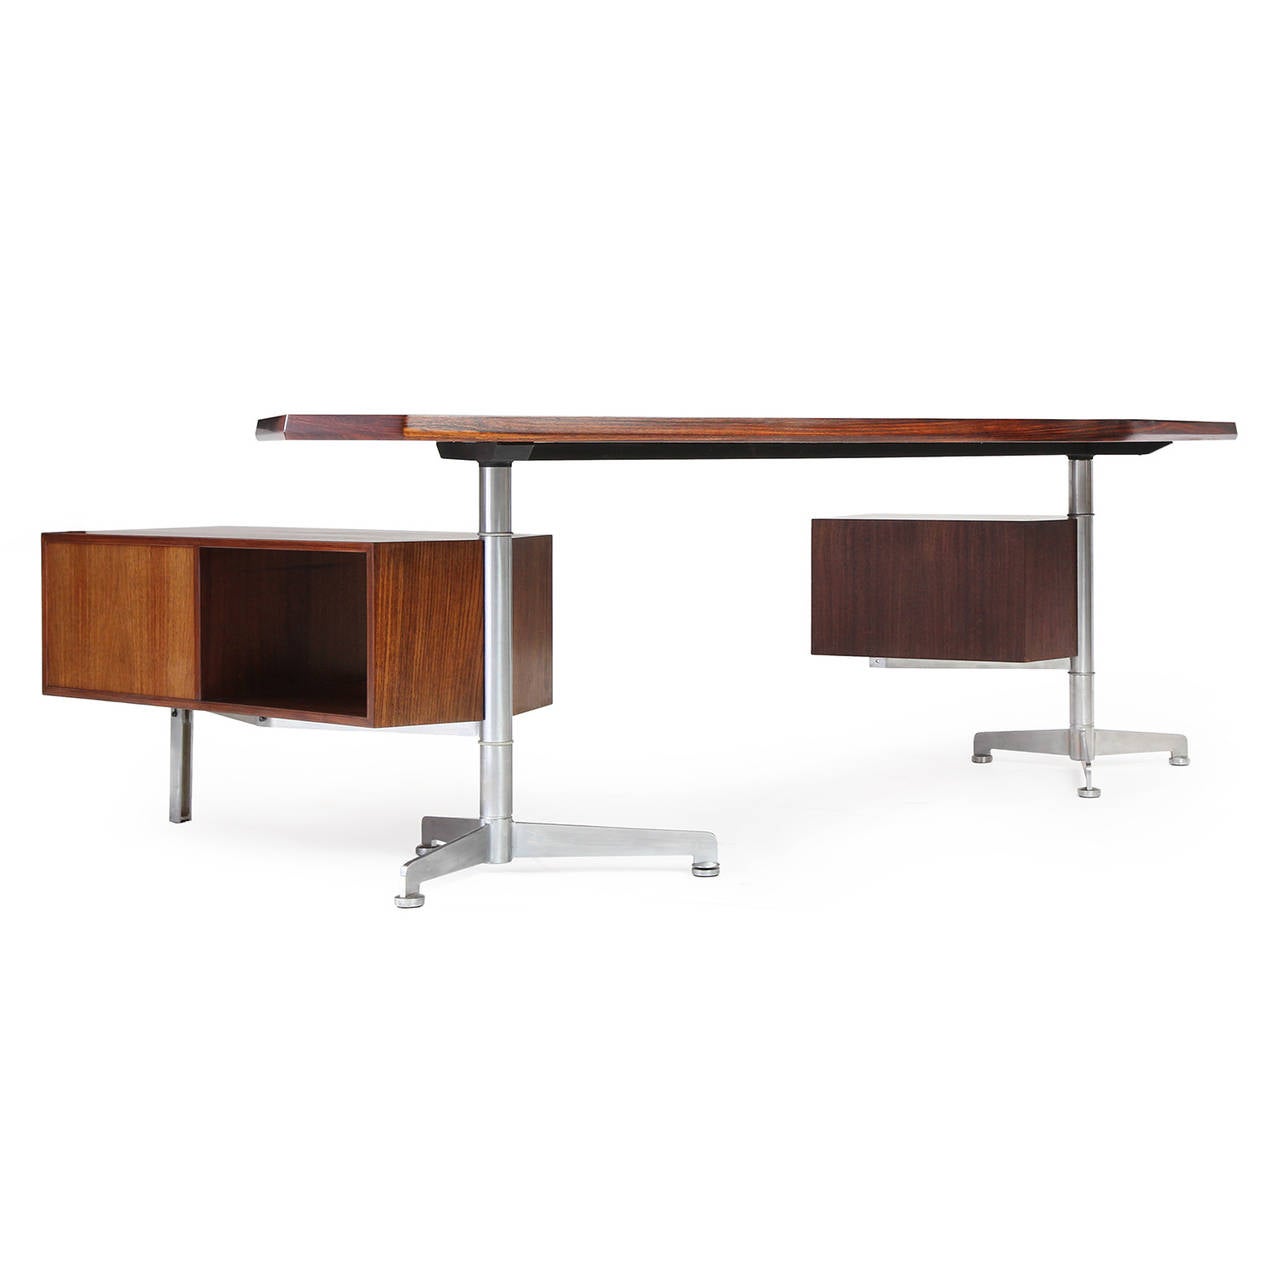 Mid-20th Century Modernist Desk by Osvaldo Borsani